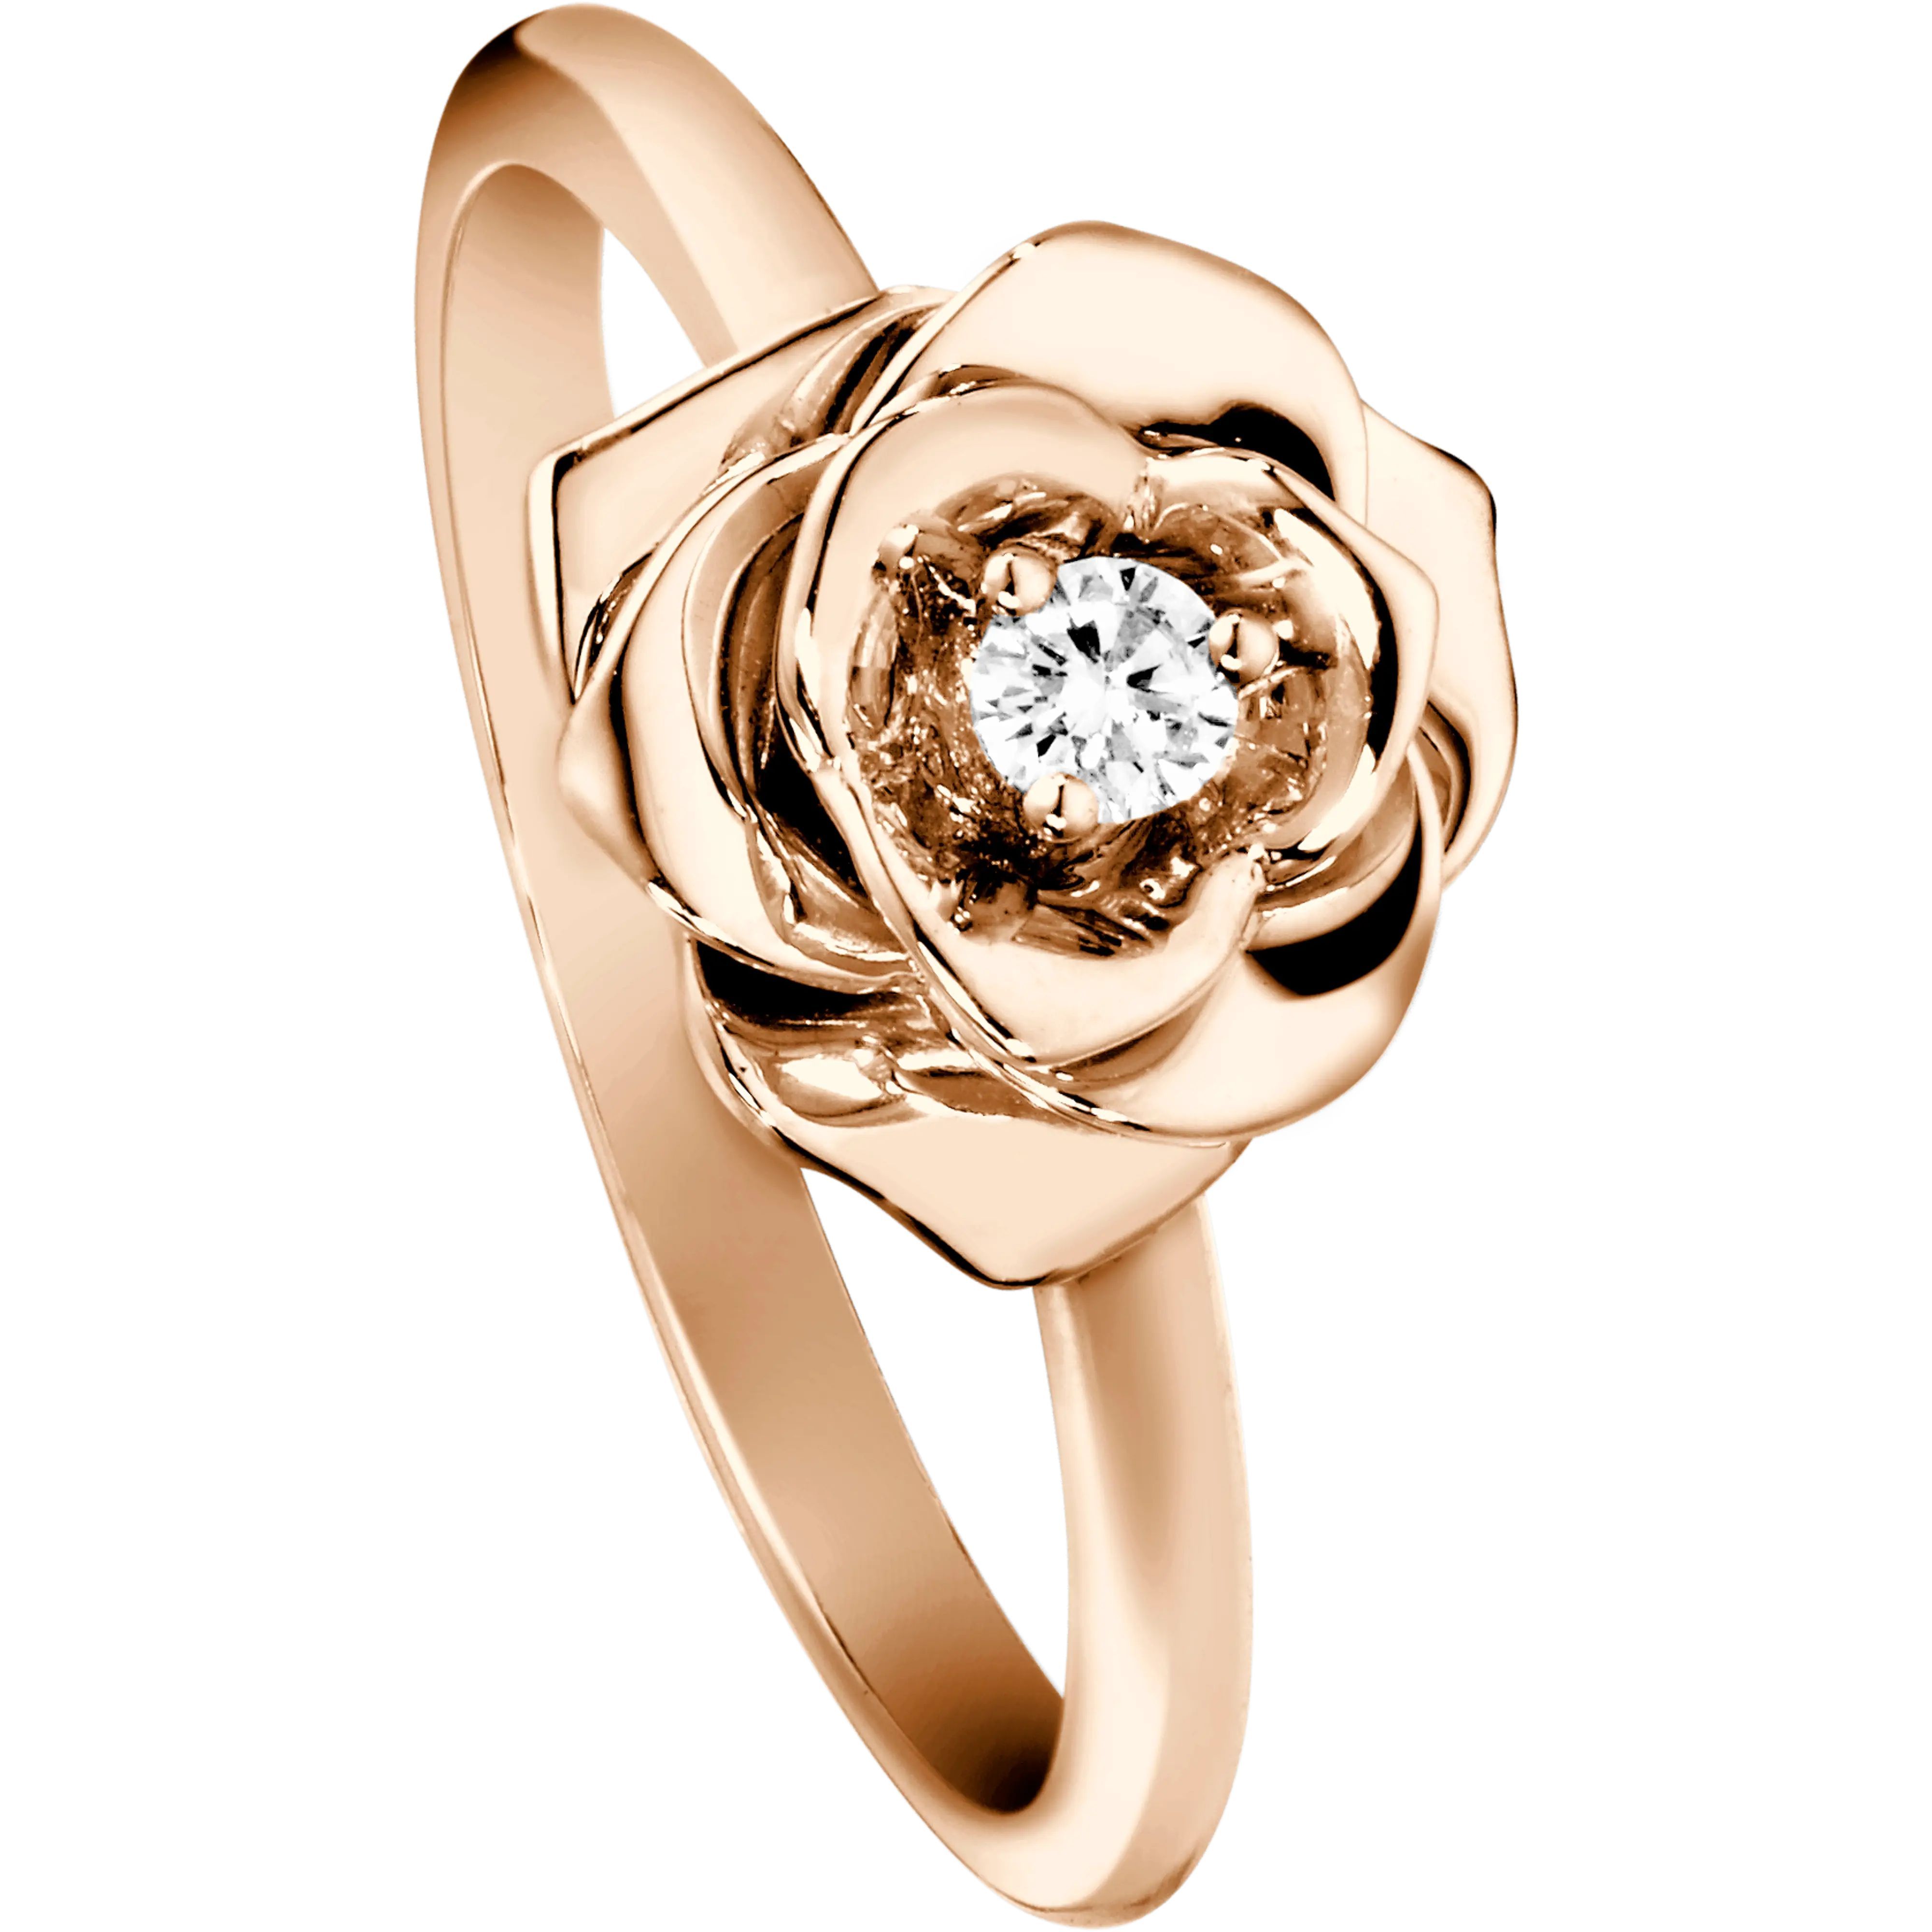 Ювелирное изделие кольцо с бриллиантом. Кольцо Piaget Rose. Пьяже ювелирные украшения. Piaget g34p7462 кольцо. Пьяже кольцо с бриллиантами.